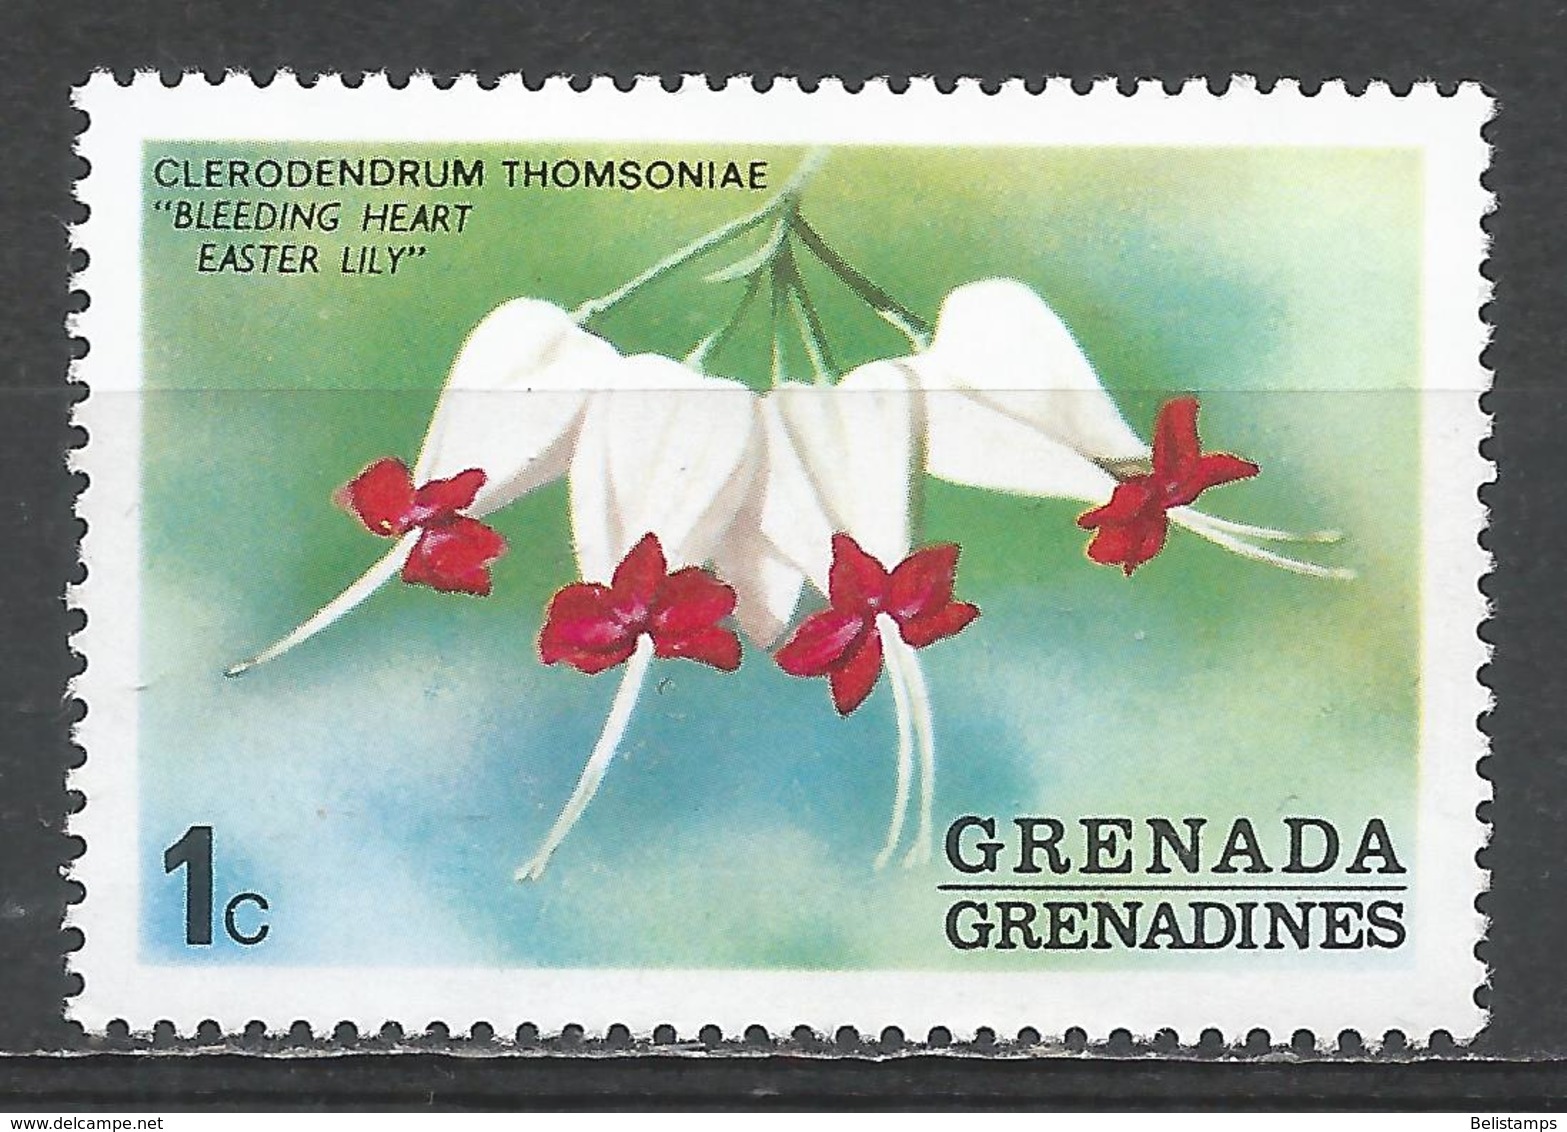 Grenada Grenadines 1975. Scott #51 (MNH) Bleeding Heart, Flower * - Grenade (1974-...)